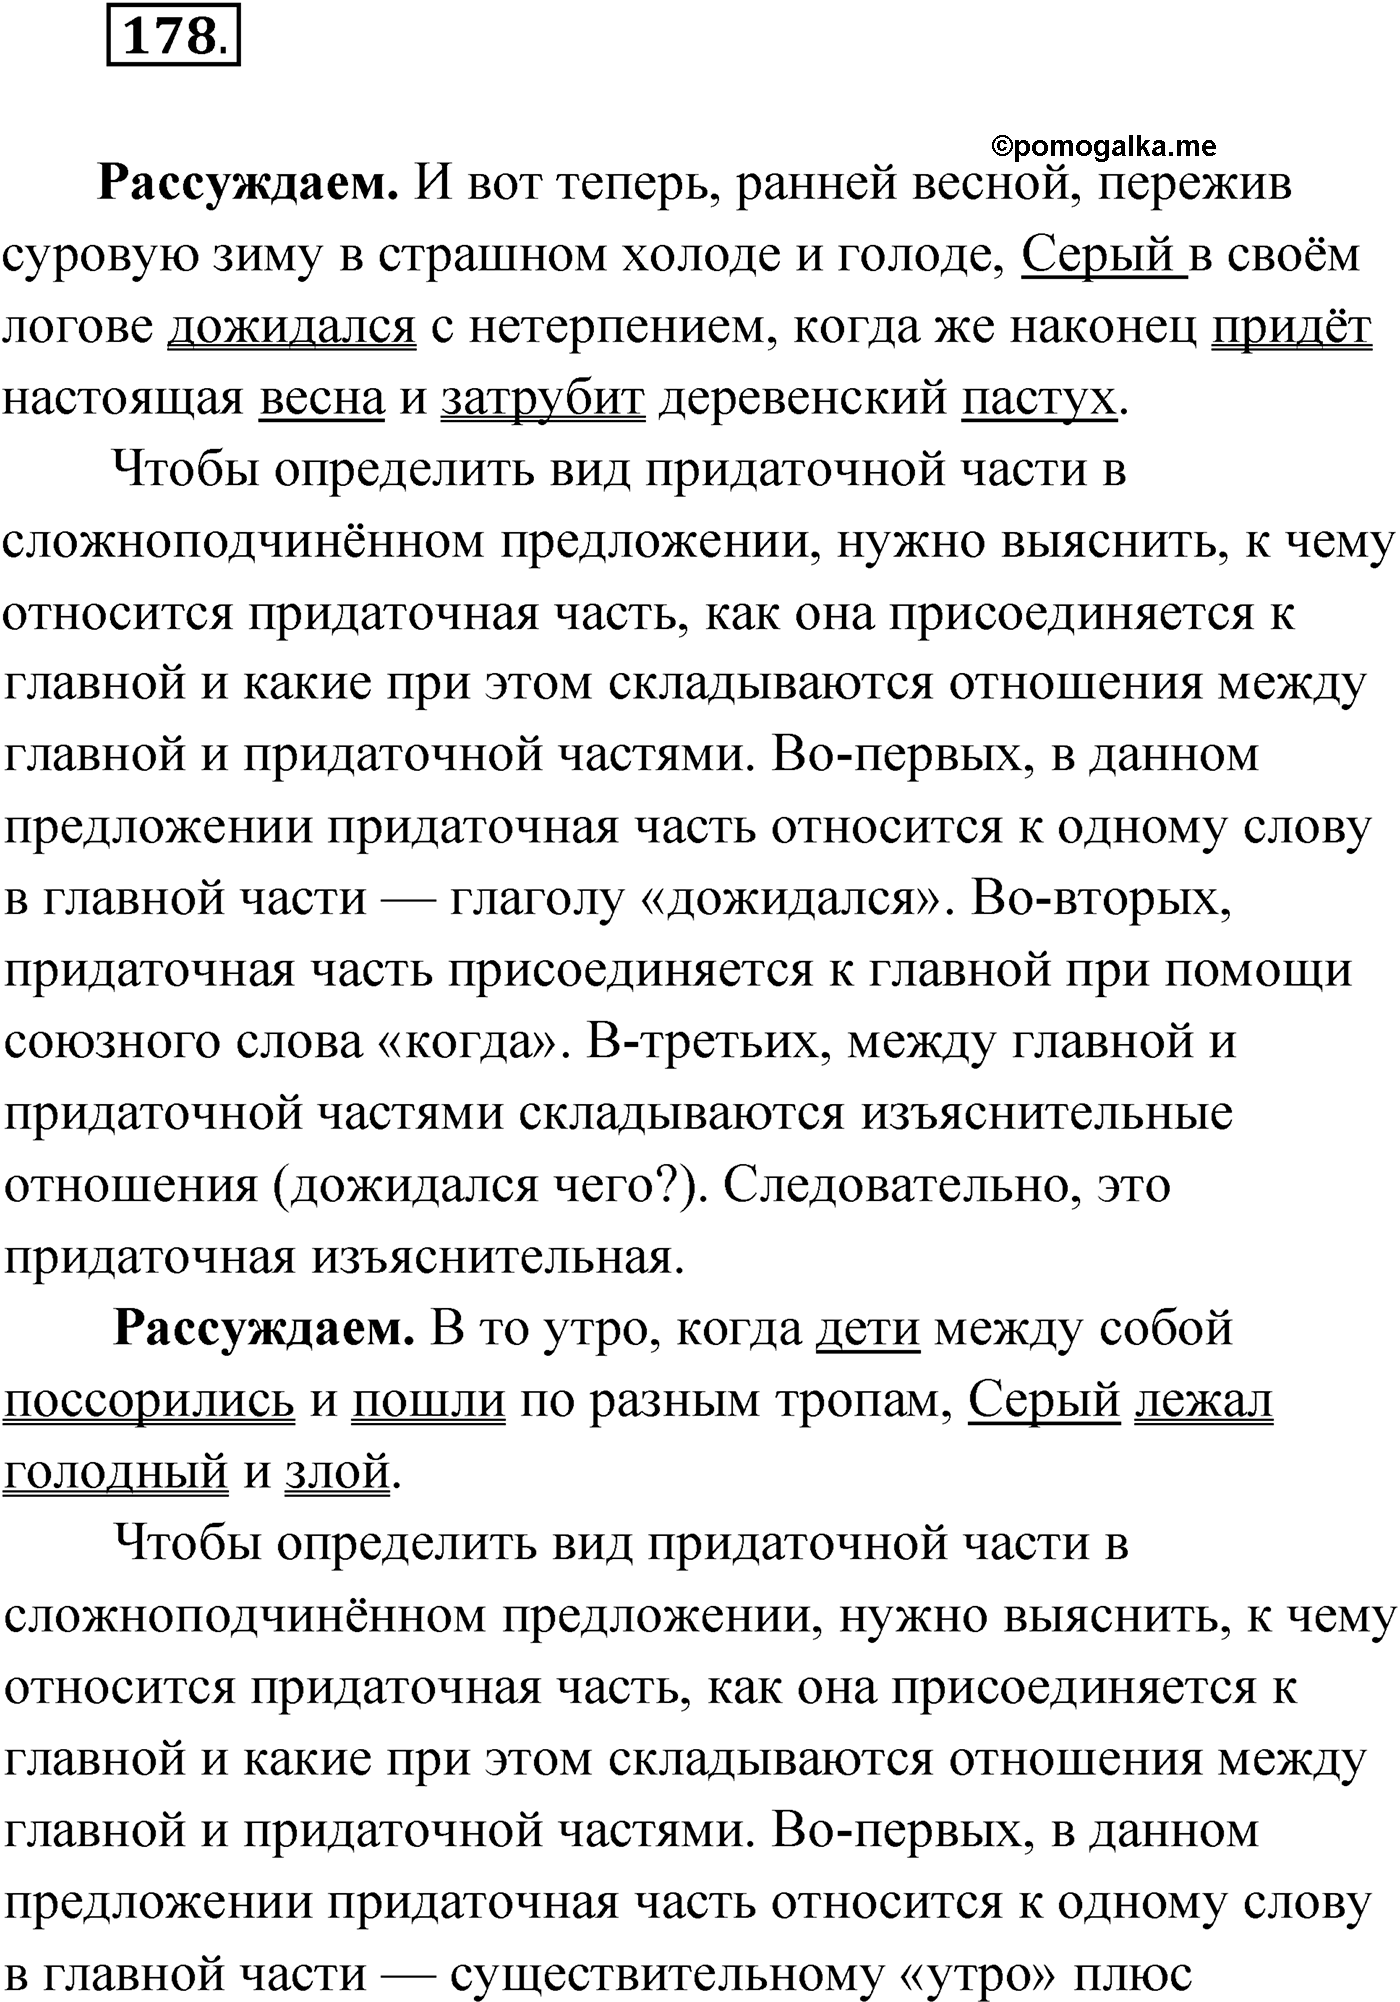 упражнение №178 русский язык 9 класс Мурина 2019 год